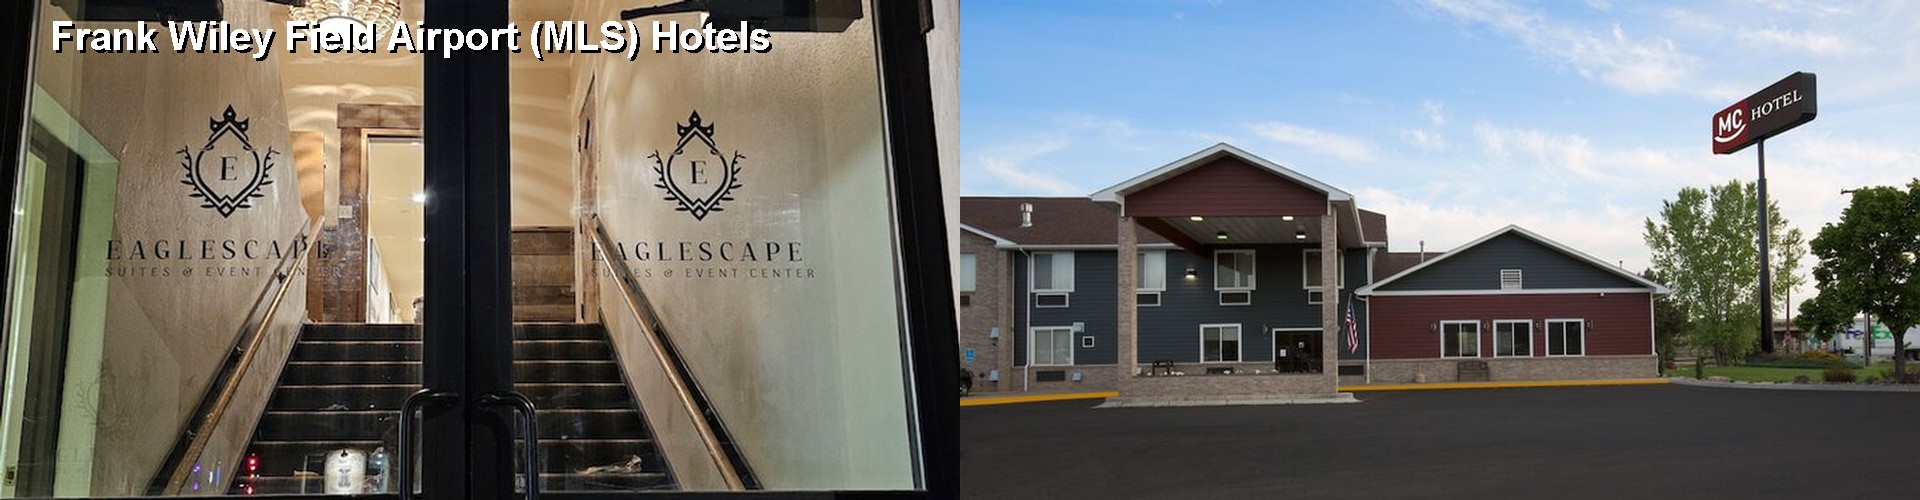 5 Best Hotels near Frank Wiley Field Airport (MLS)